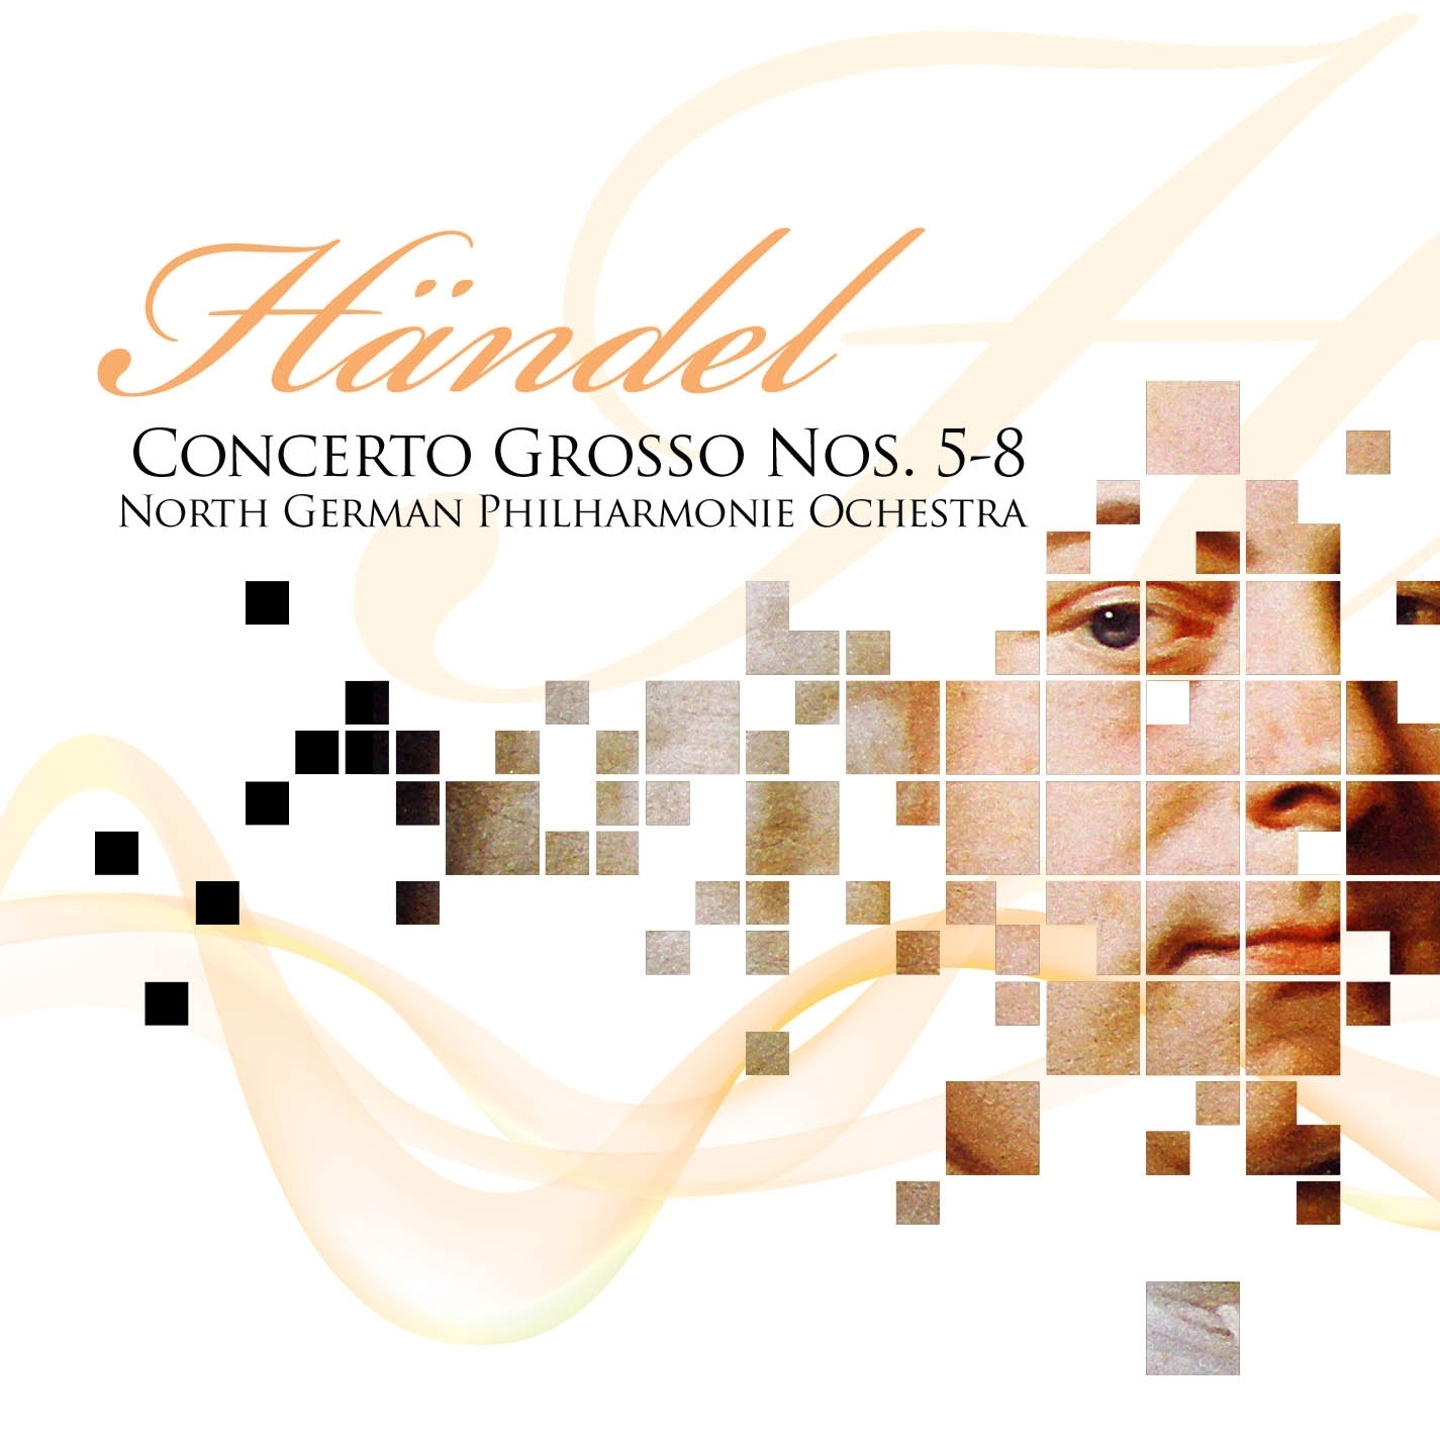 Concerto Grosso No. 5, in D Major, Op. 6 : Presto